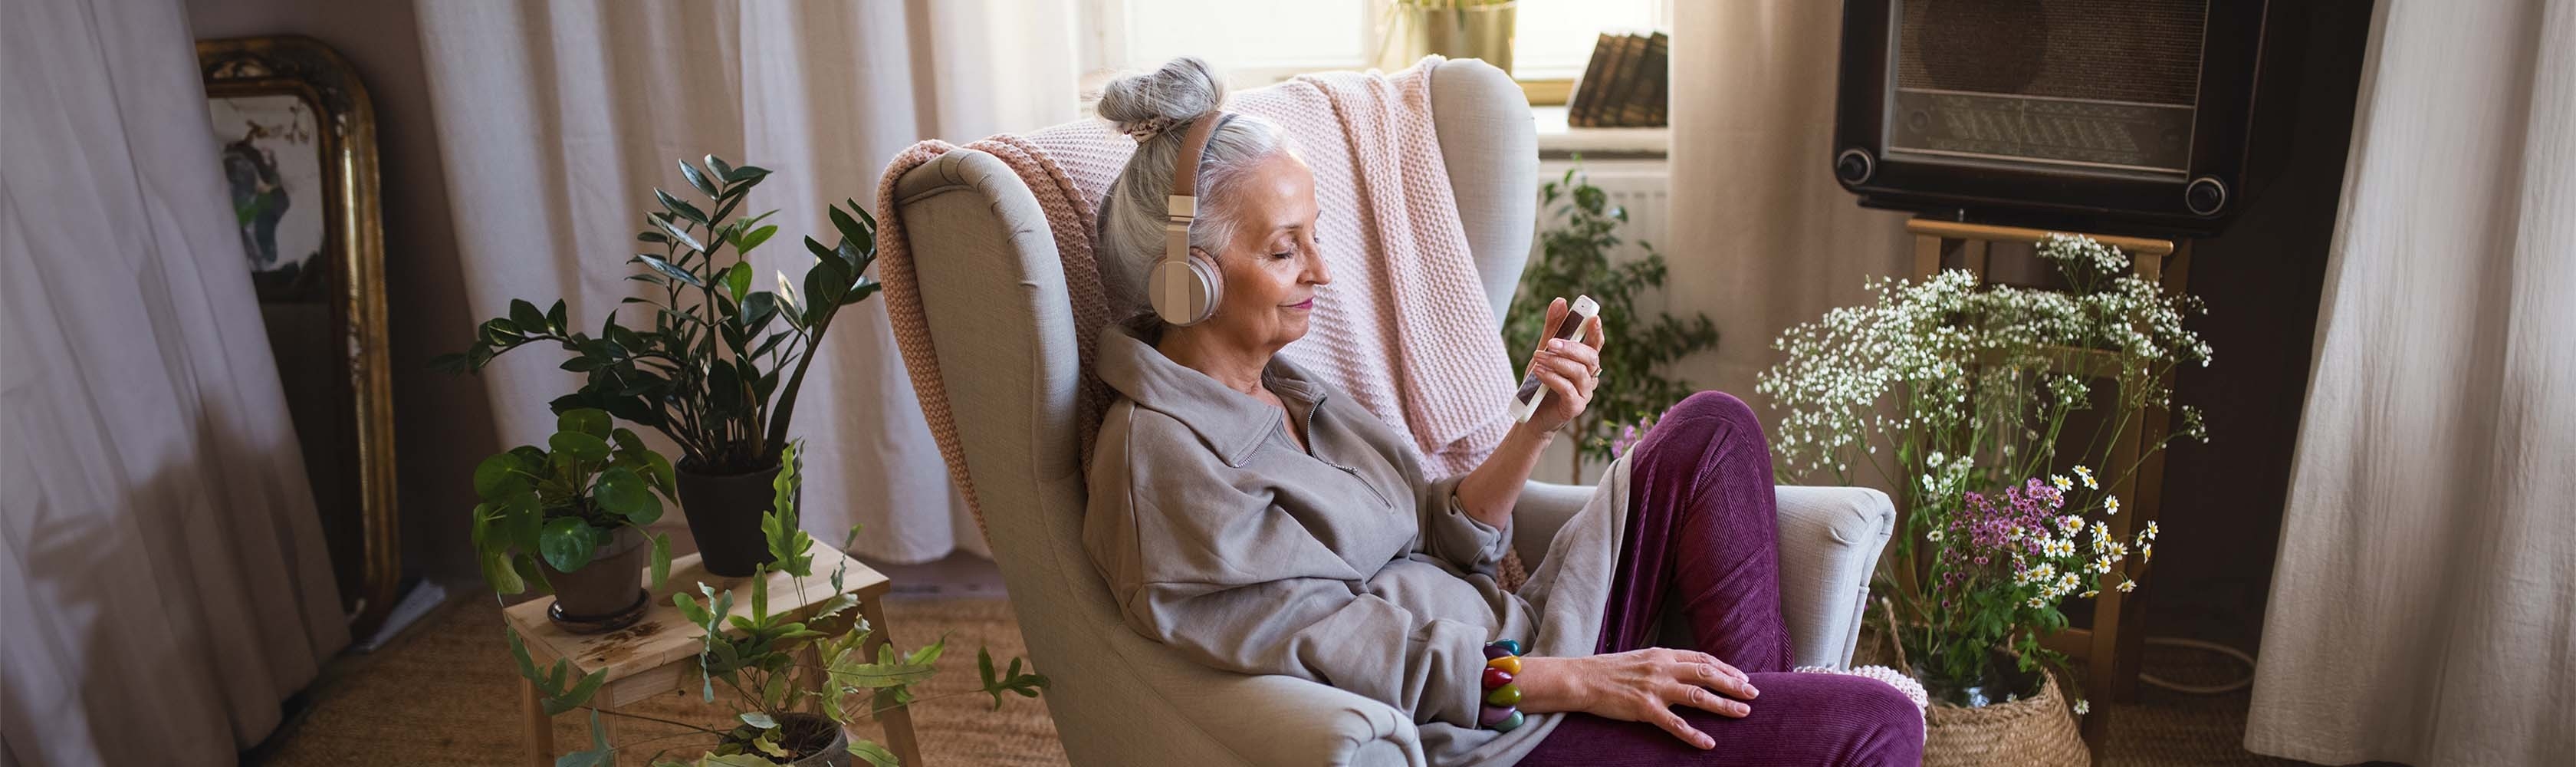 Ältere Frau sitzt auf einem Sessel in ihrem Wohnzimmer und hört einen Podcast zu Gesundheitsthemen 